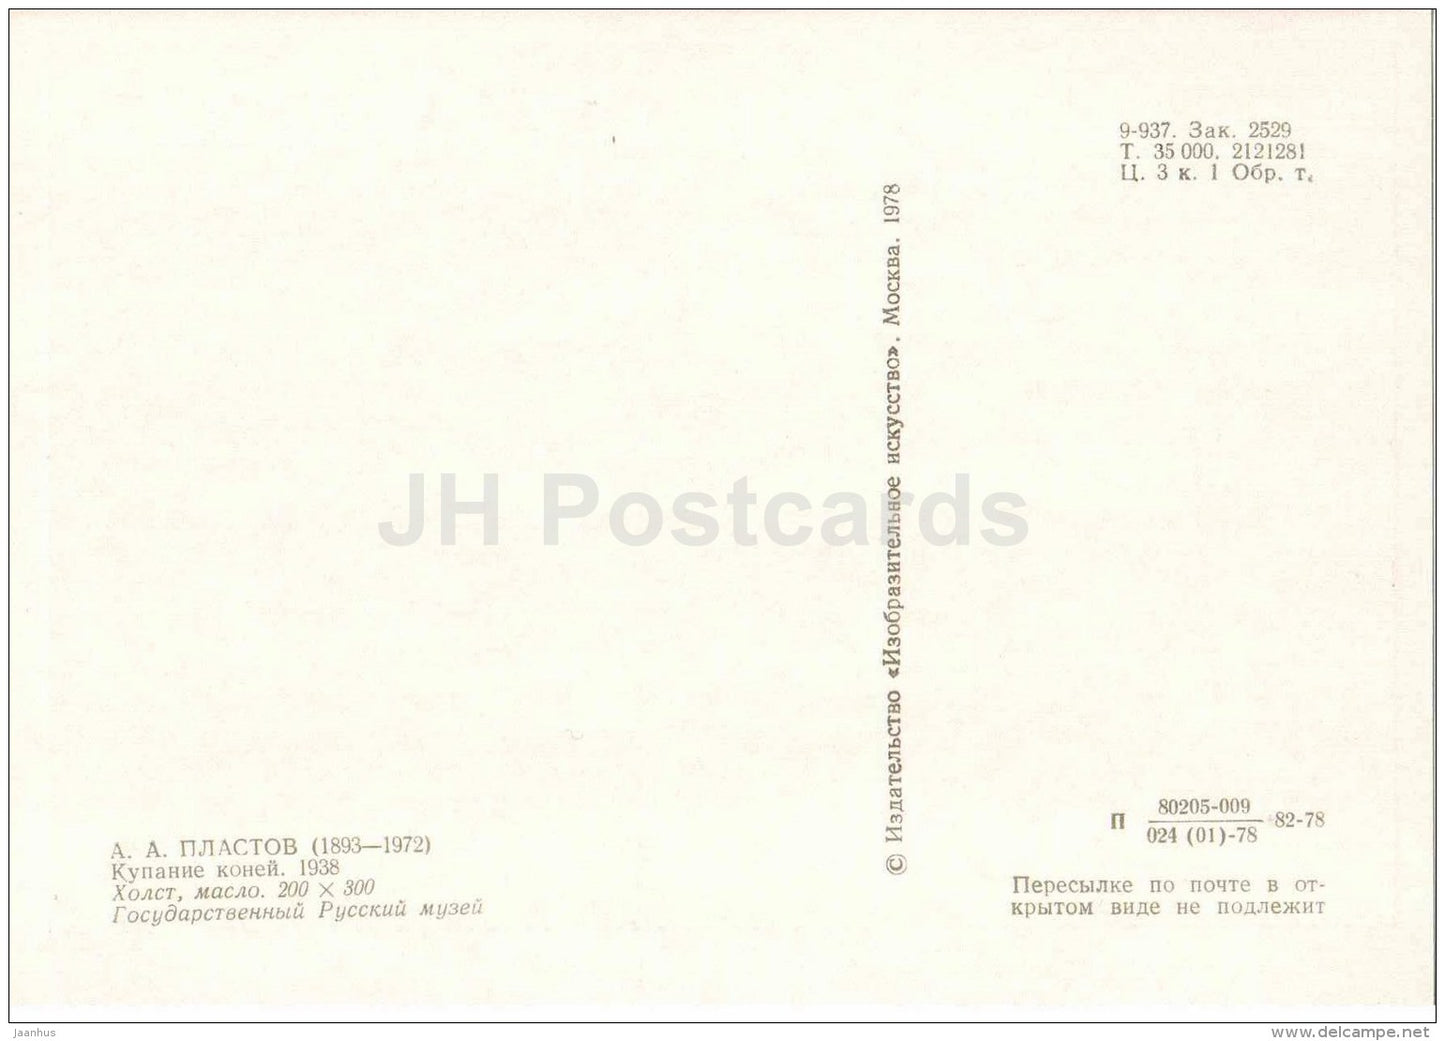 Portrait of A. Plastov - Bathing Horses , 1938 - naked boys - nude - 1978 - Russia USSR - unused - JH Postcards